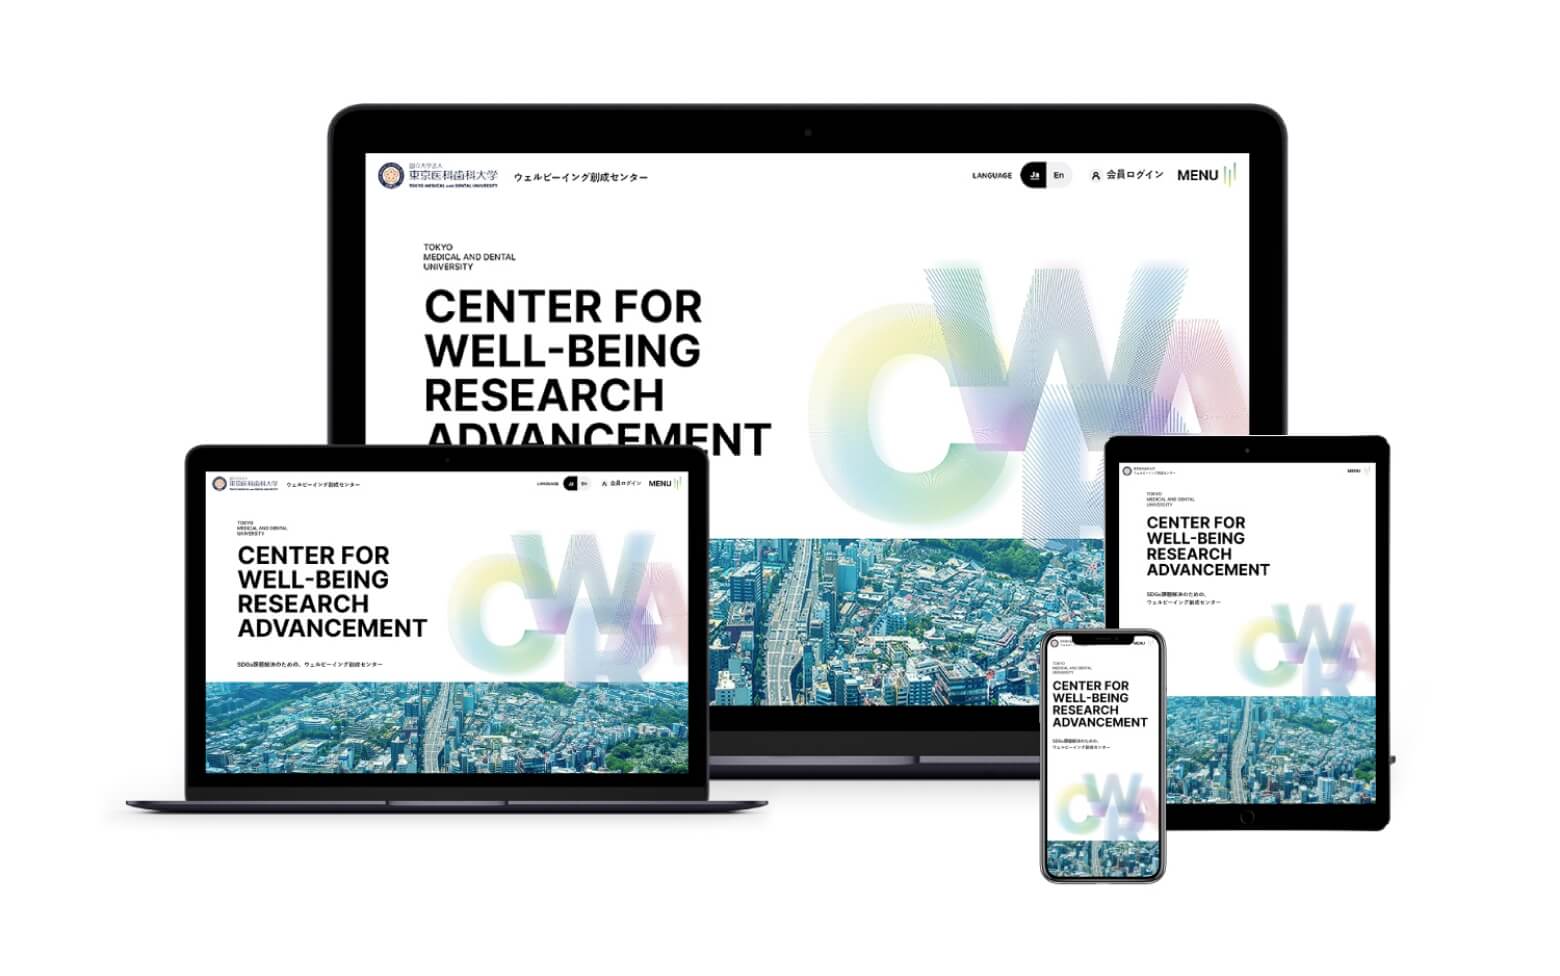 ウェルビーイング創成センターWEBサイトを開設しました。